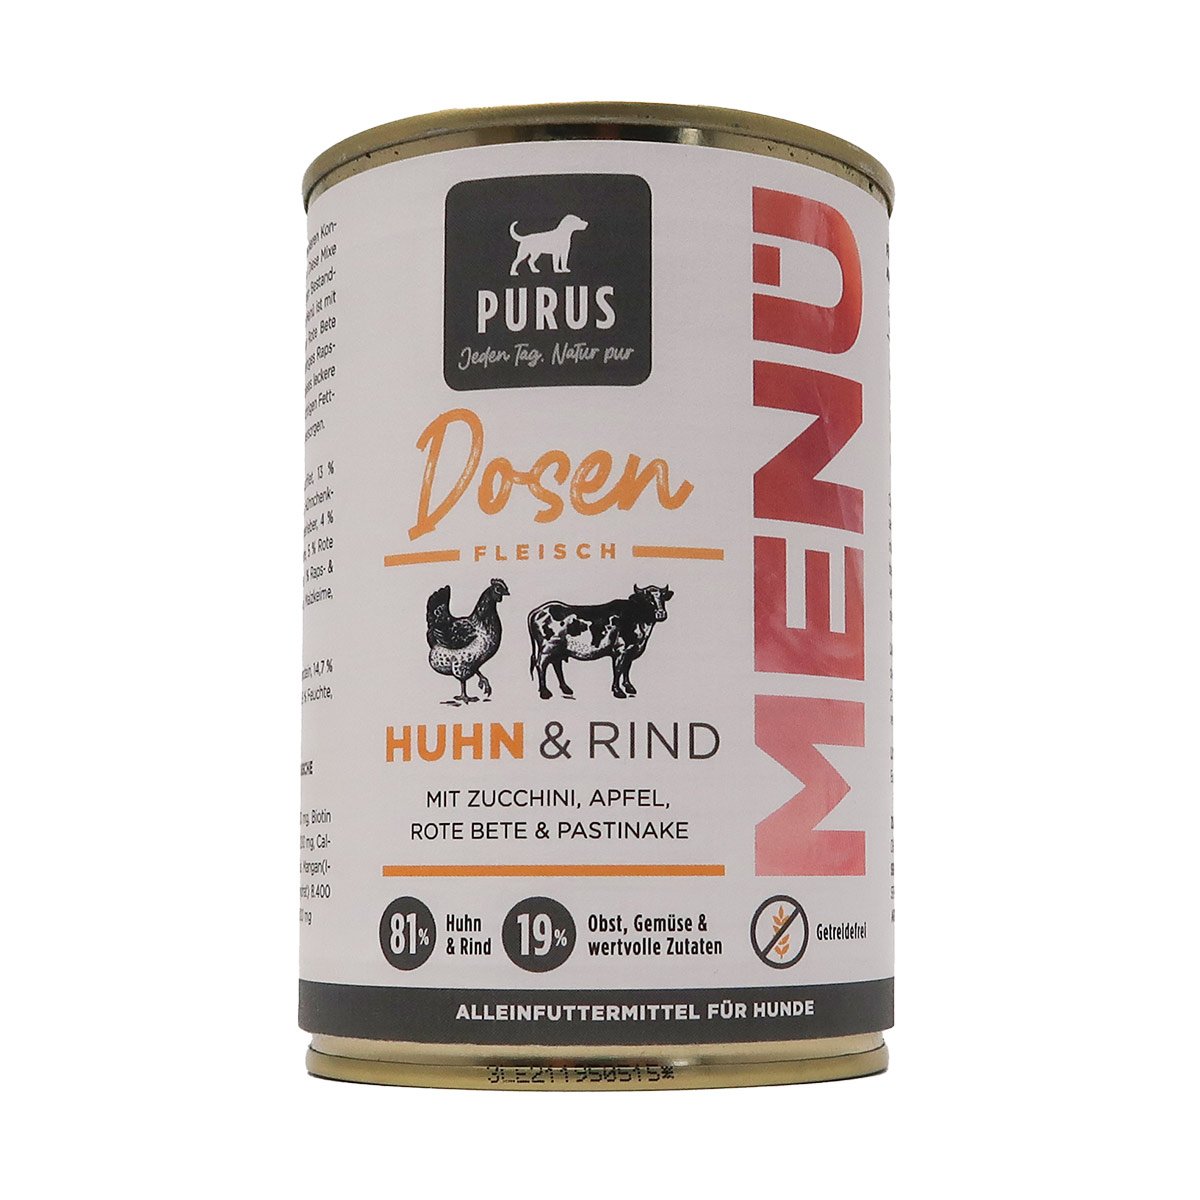 Purus Dosenfleisch Menü Rind & Huhn 6x400g von PURUS